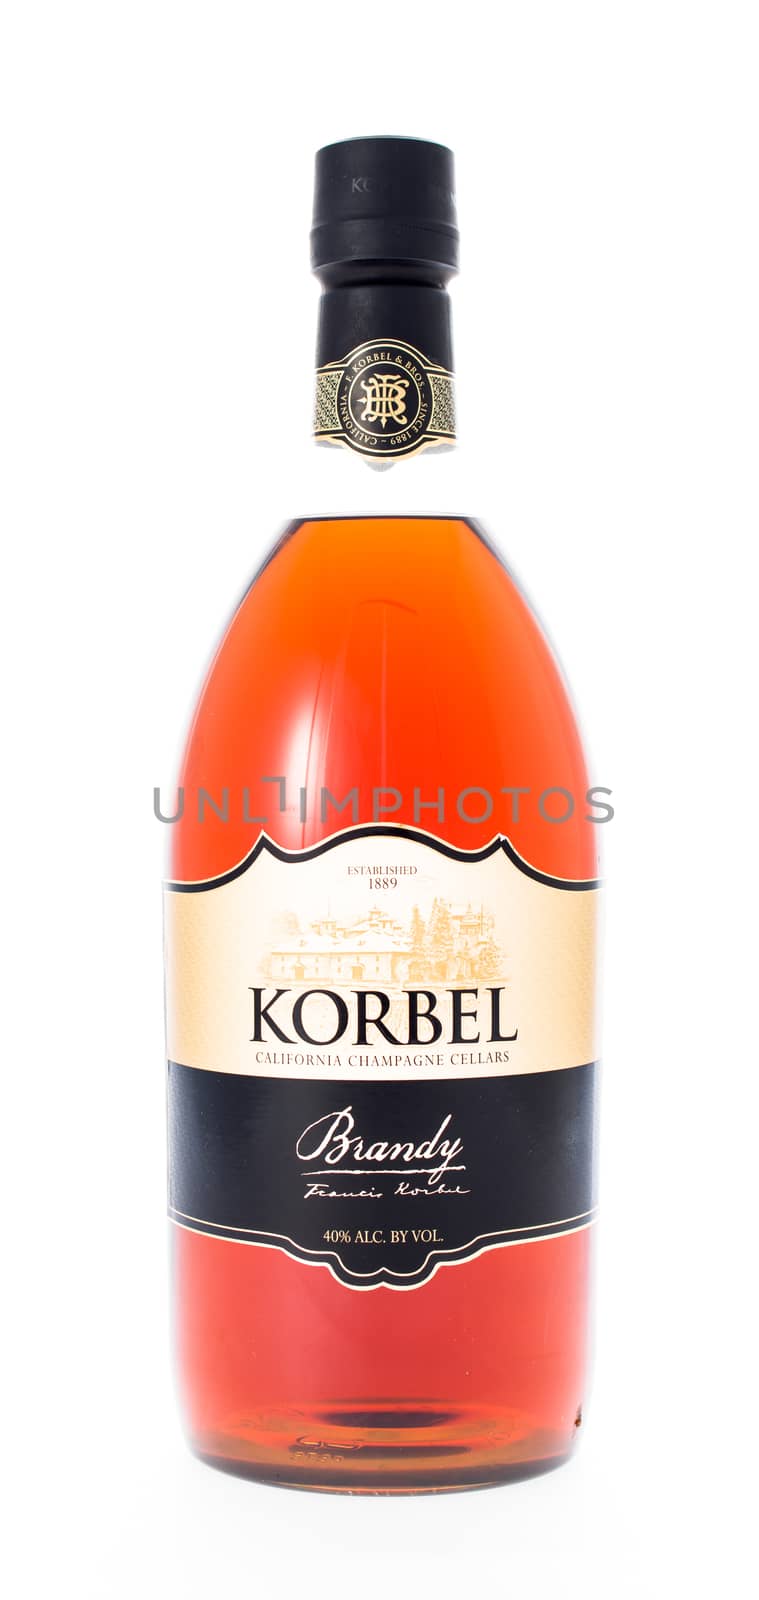 Winneconne, WI - 21 February 2015:  Bottle of Korbel Brandy alcohol beverage